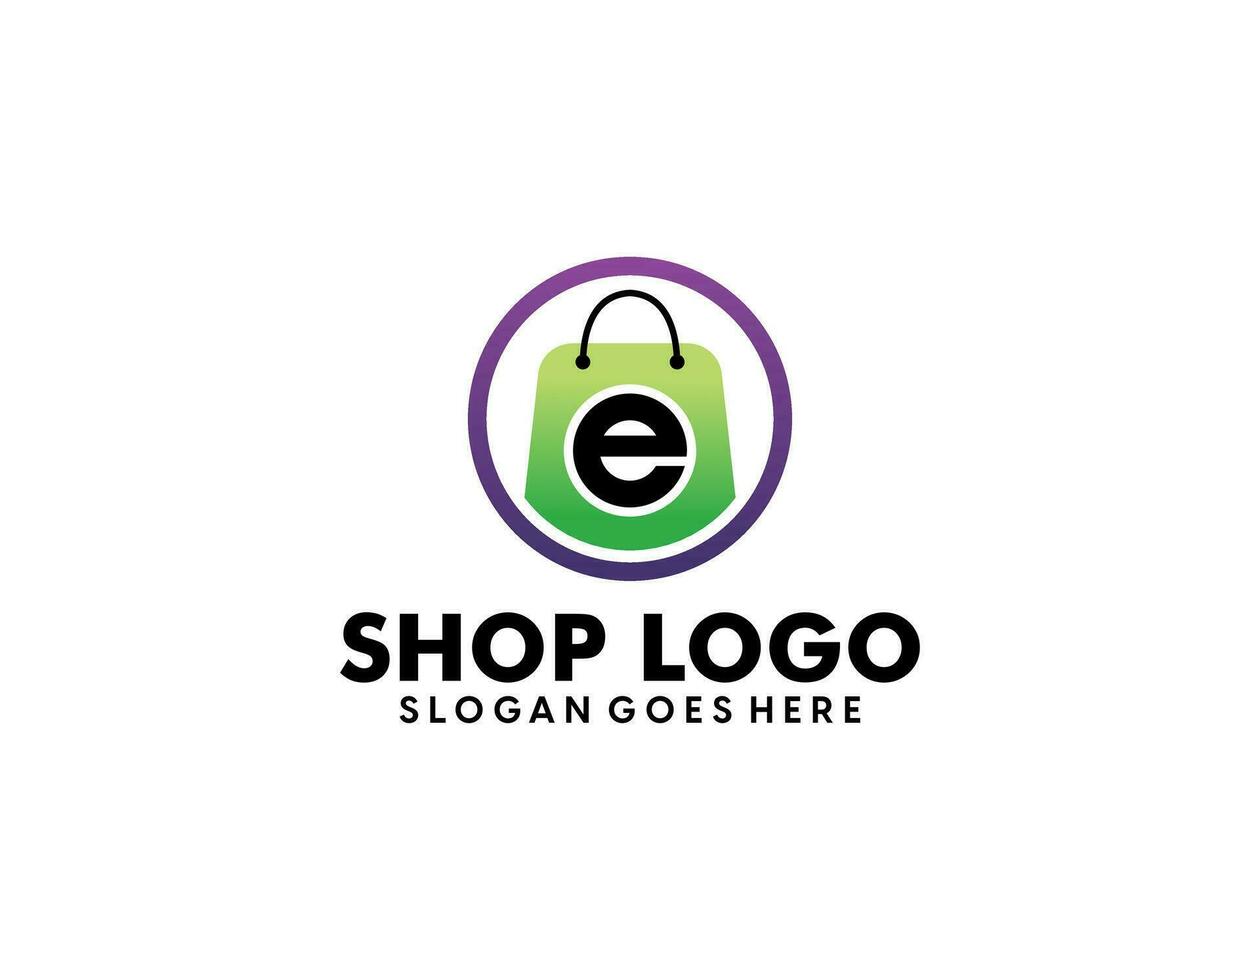 boodschappen doen en kleinhandel logo vector